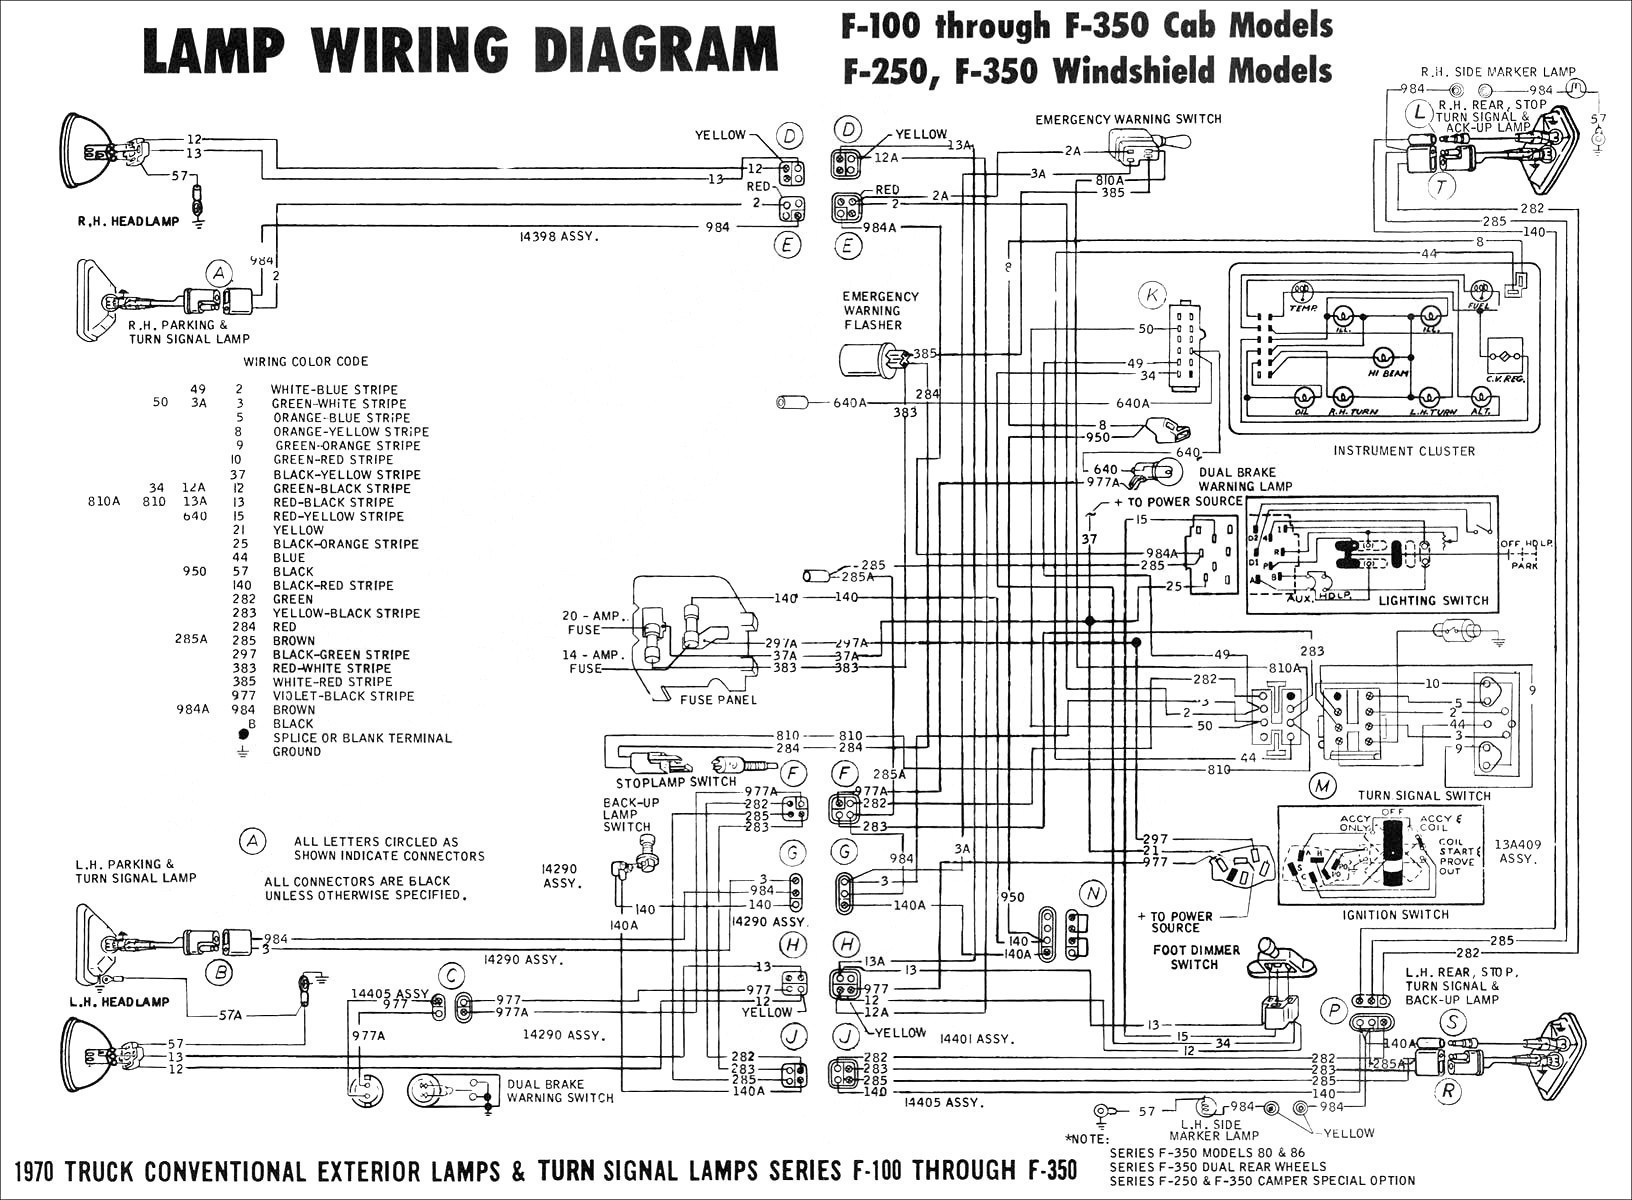 2000 Dodge Intrepid 2 7 Engine Diagram 2 96 Dodge Wire Diagram Premium Wiring Diagram Design Of 2000 Dodge Intrepid 2 7 Engine Diagram 2